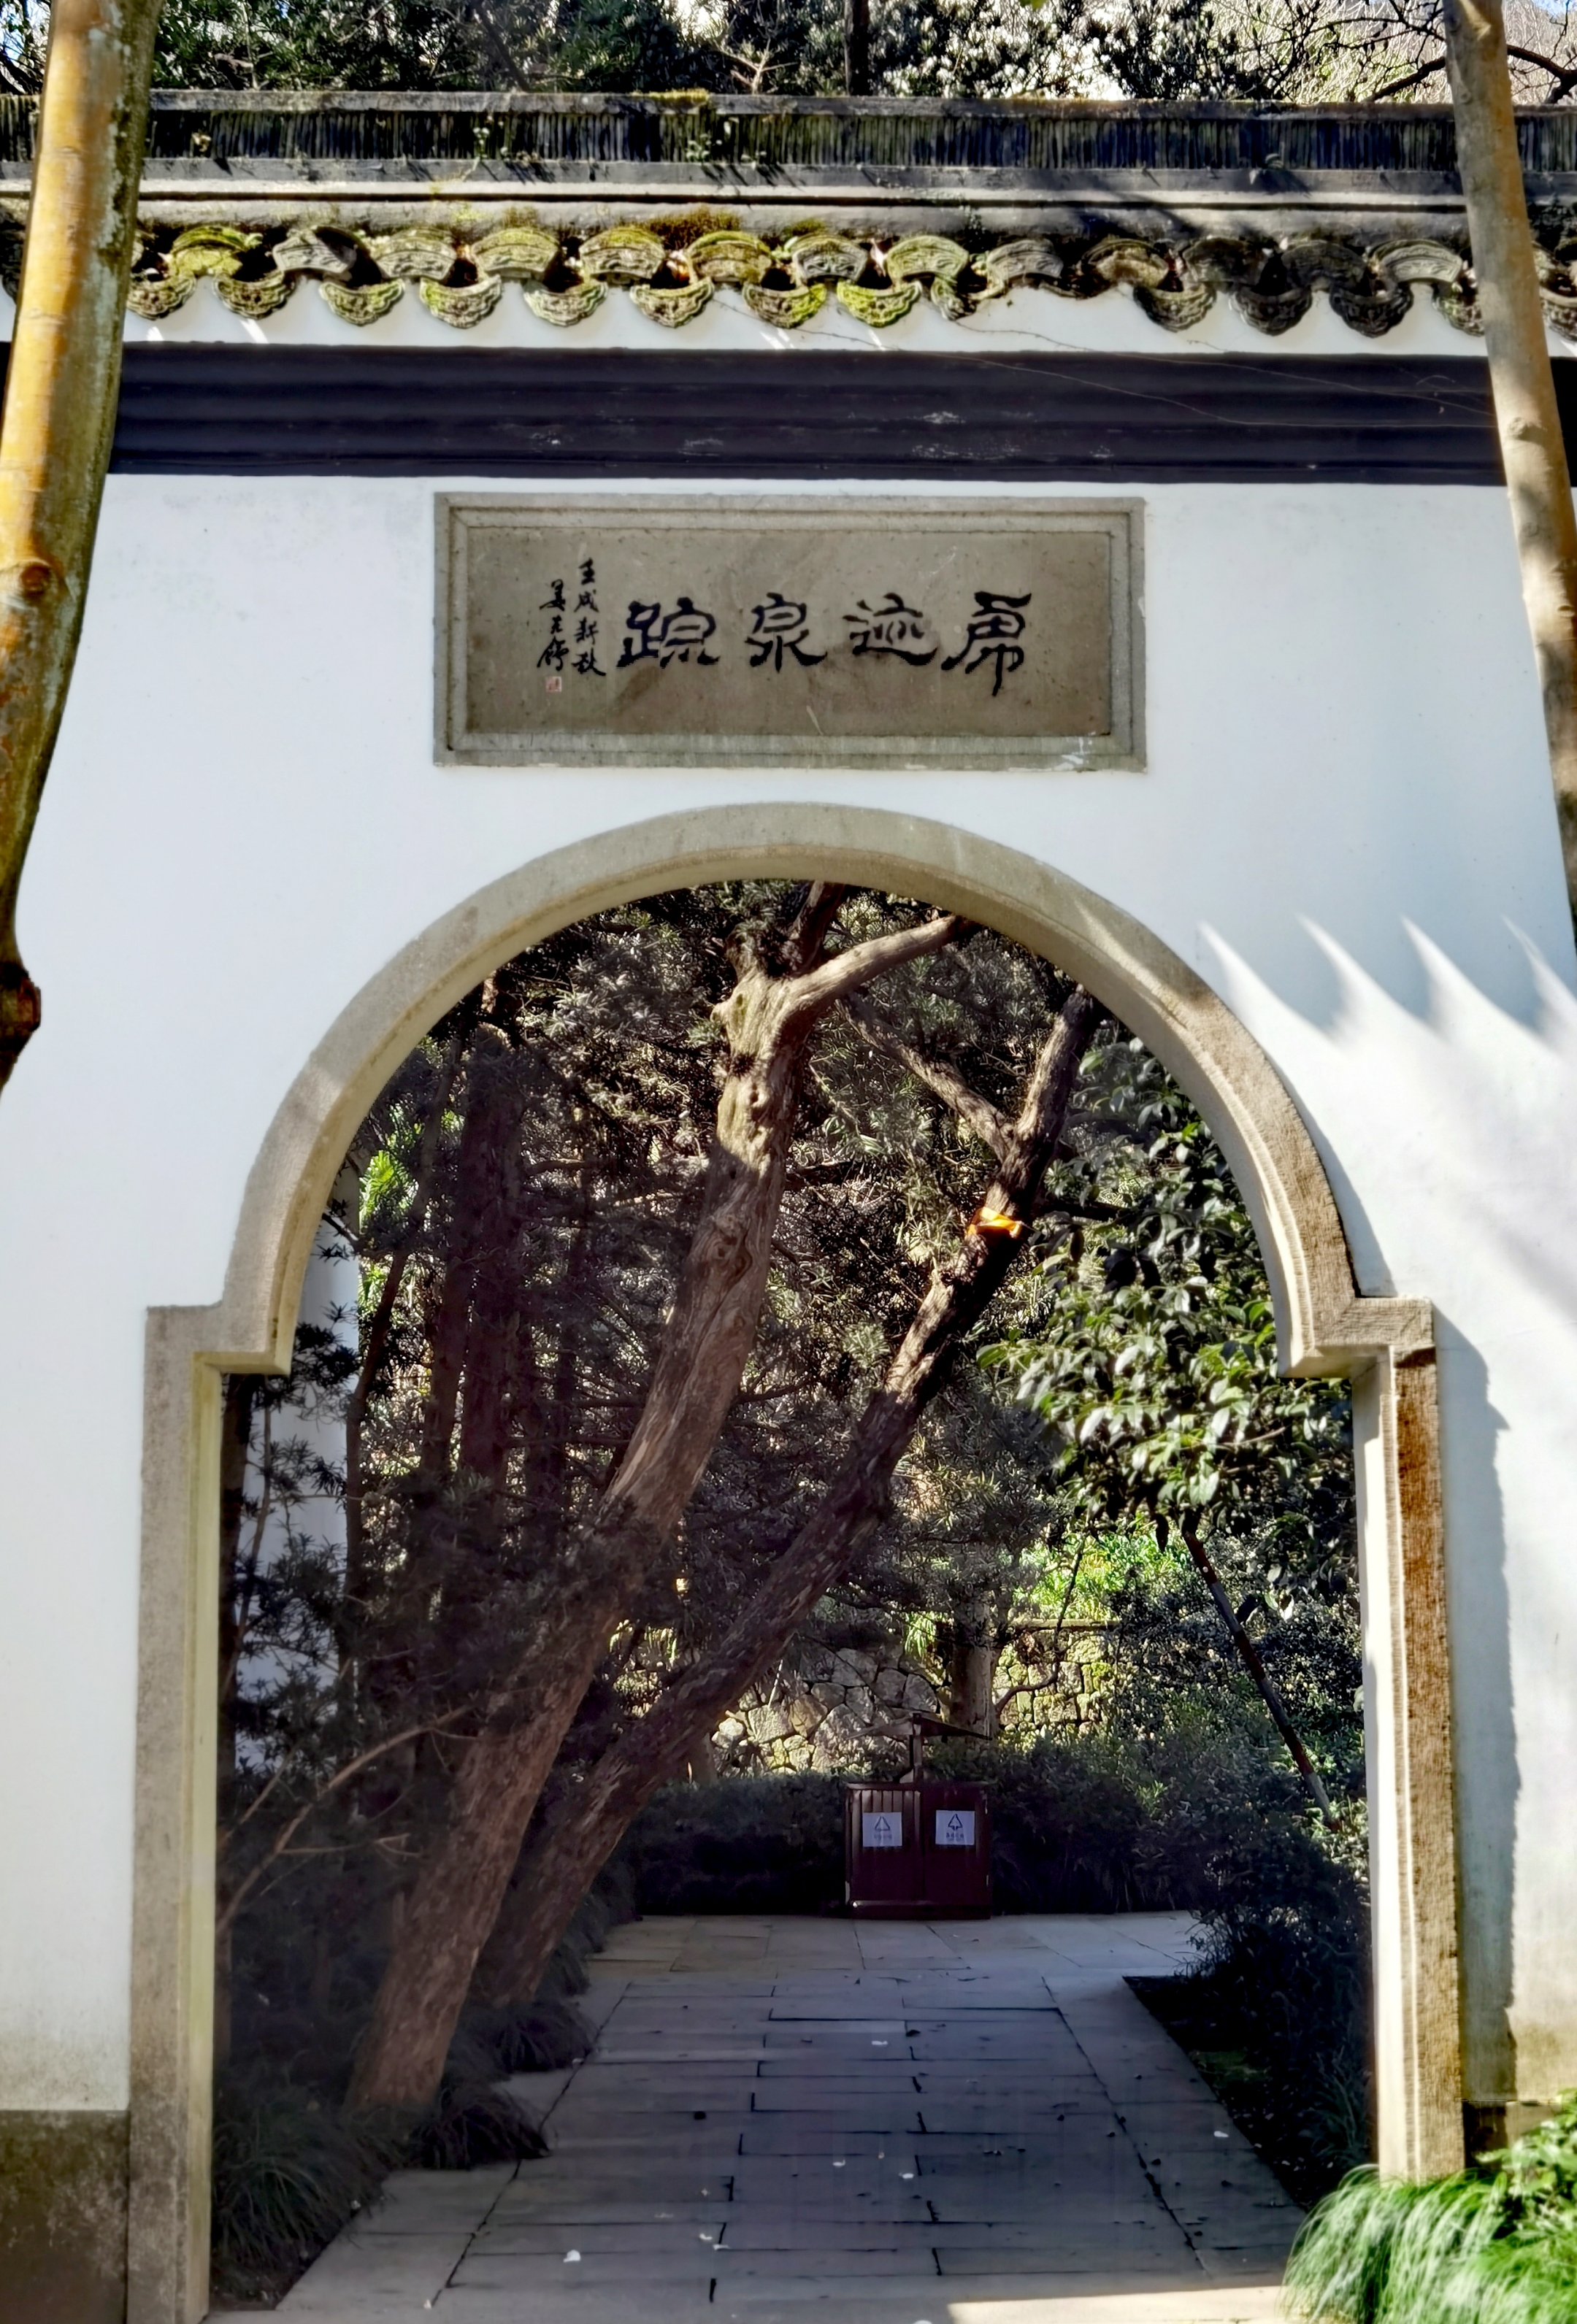 虎跑公园,又名虎跑梦泉, 位于西湖之南的大慈山定慧禅寺内,是一处以